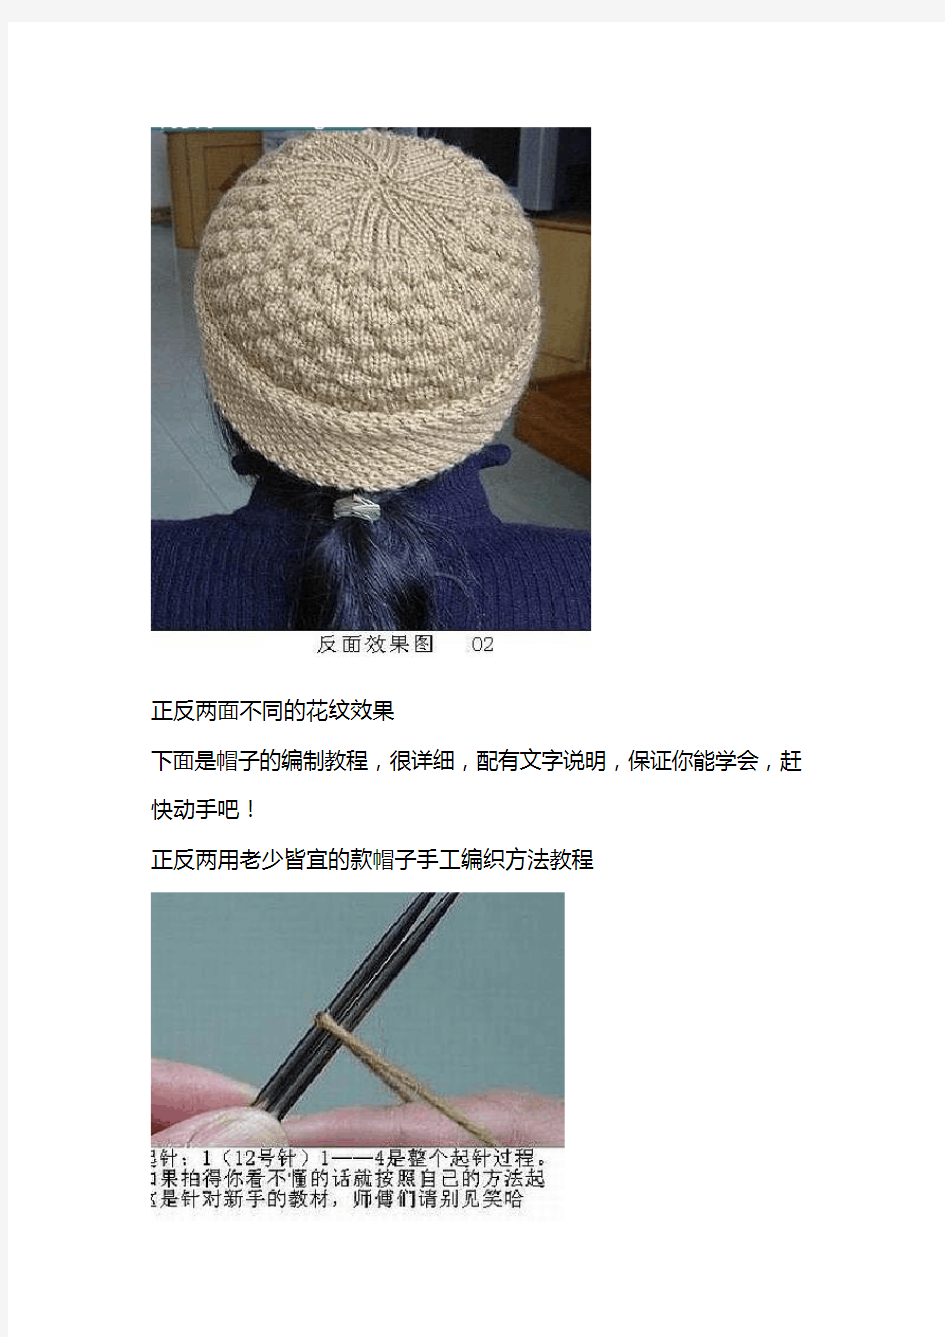 毛线帽子的编织方法(5组图解) 